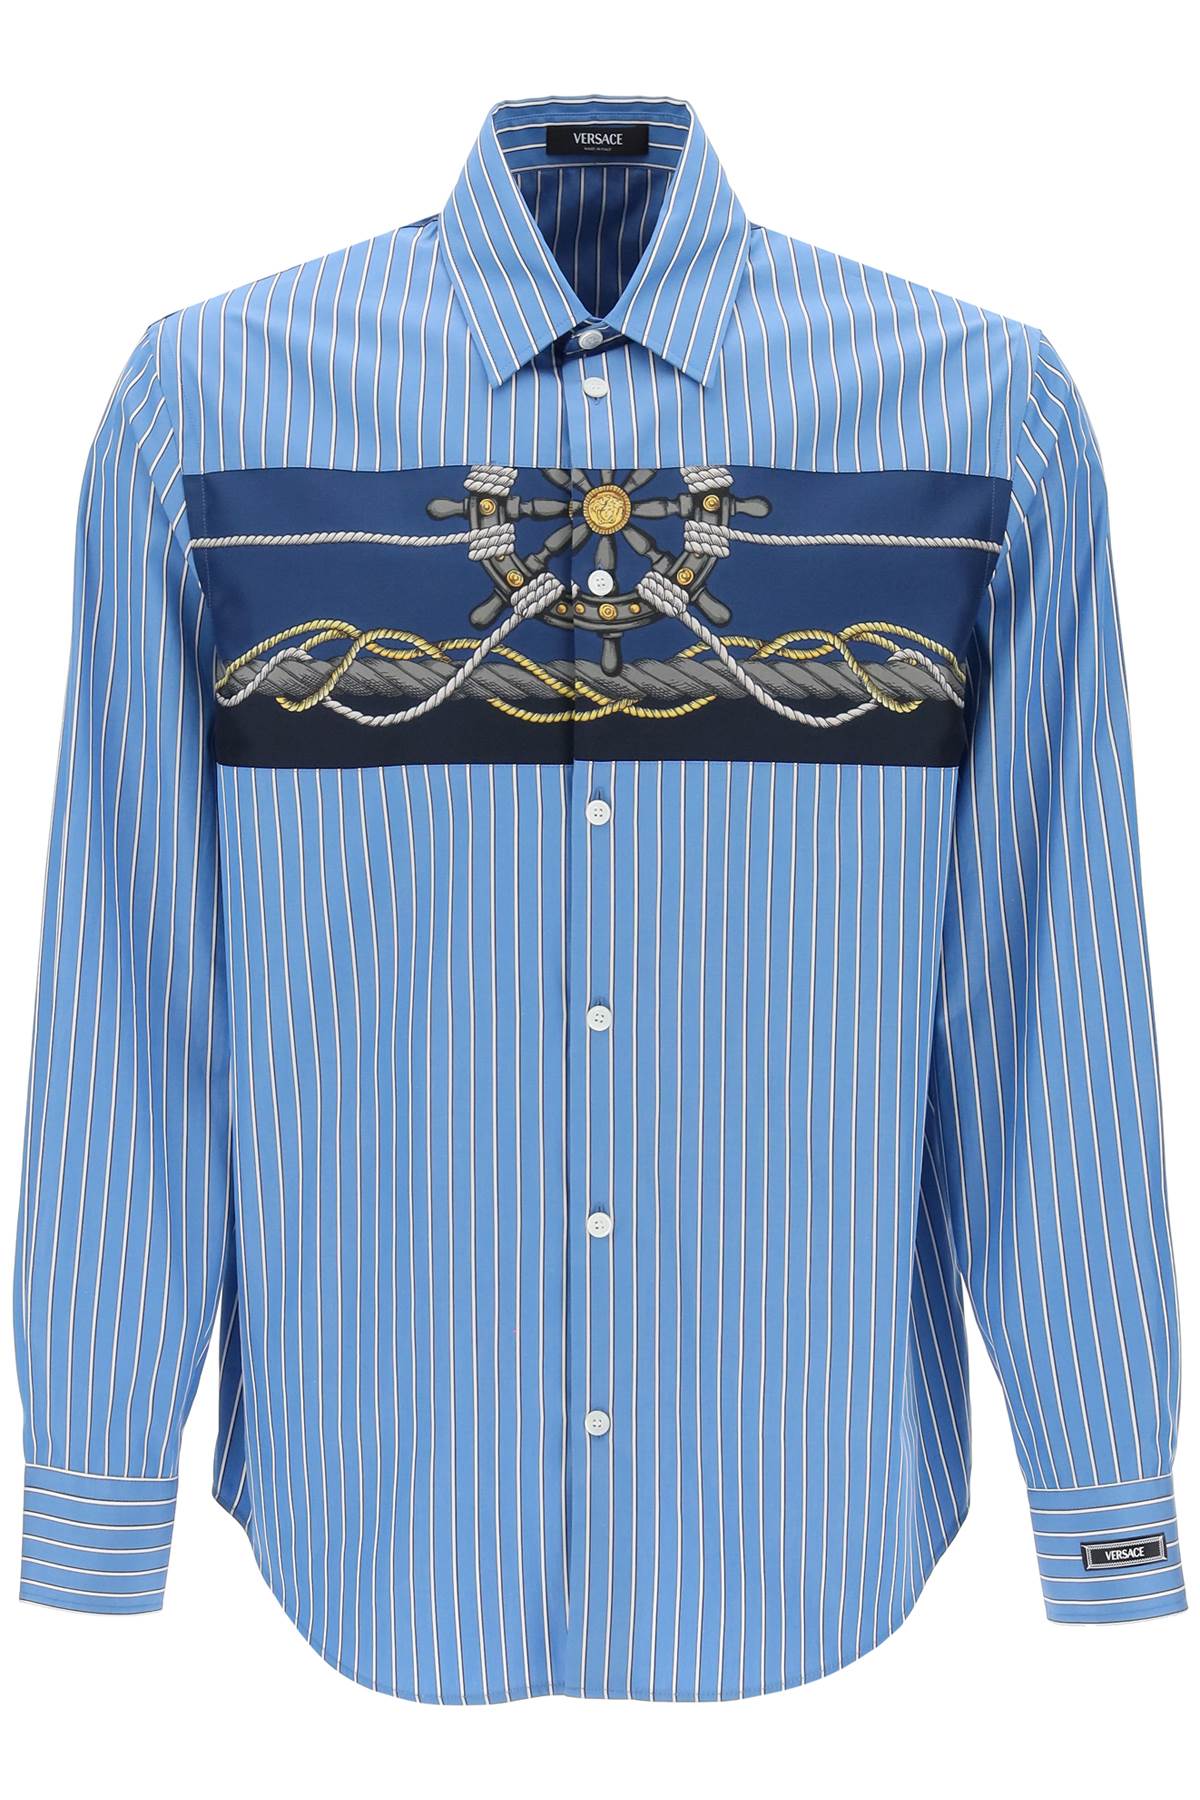 Versace Striped Shirt With Insert   Light Blue